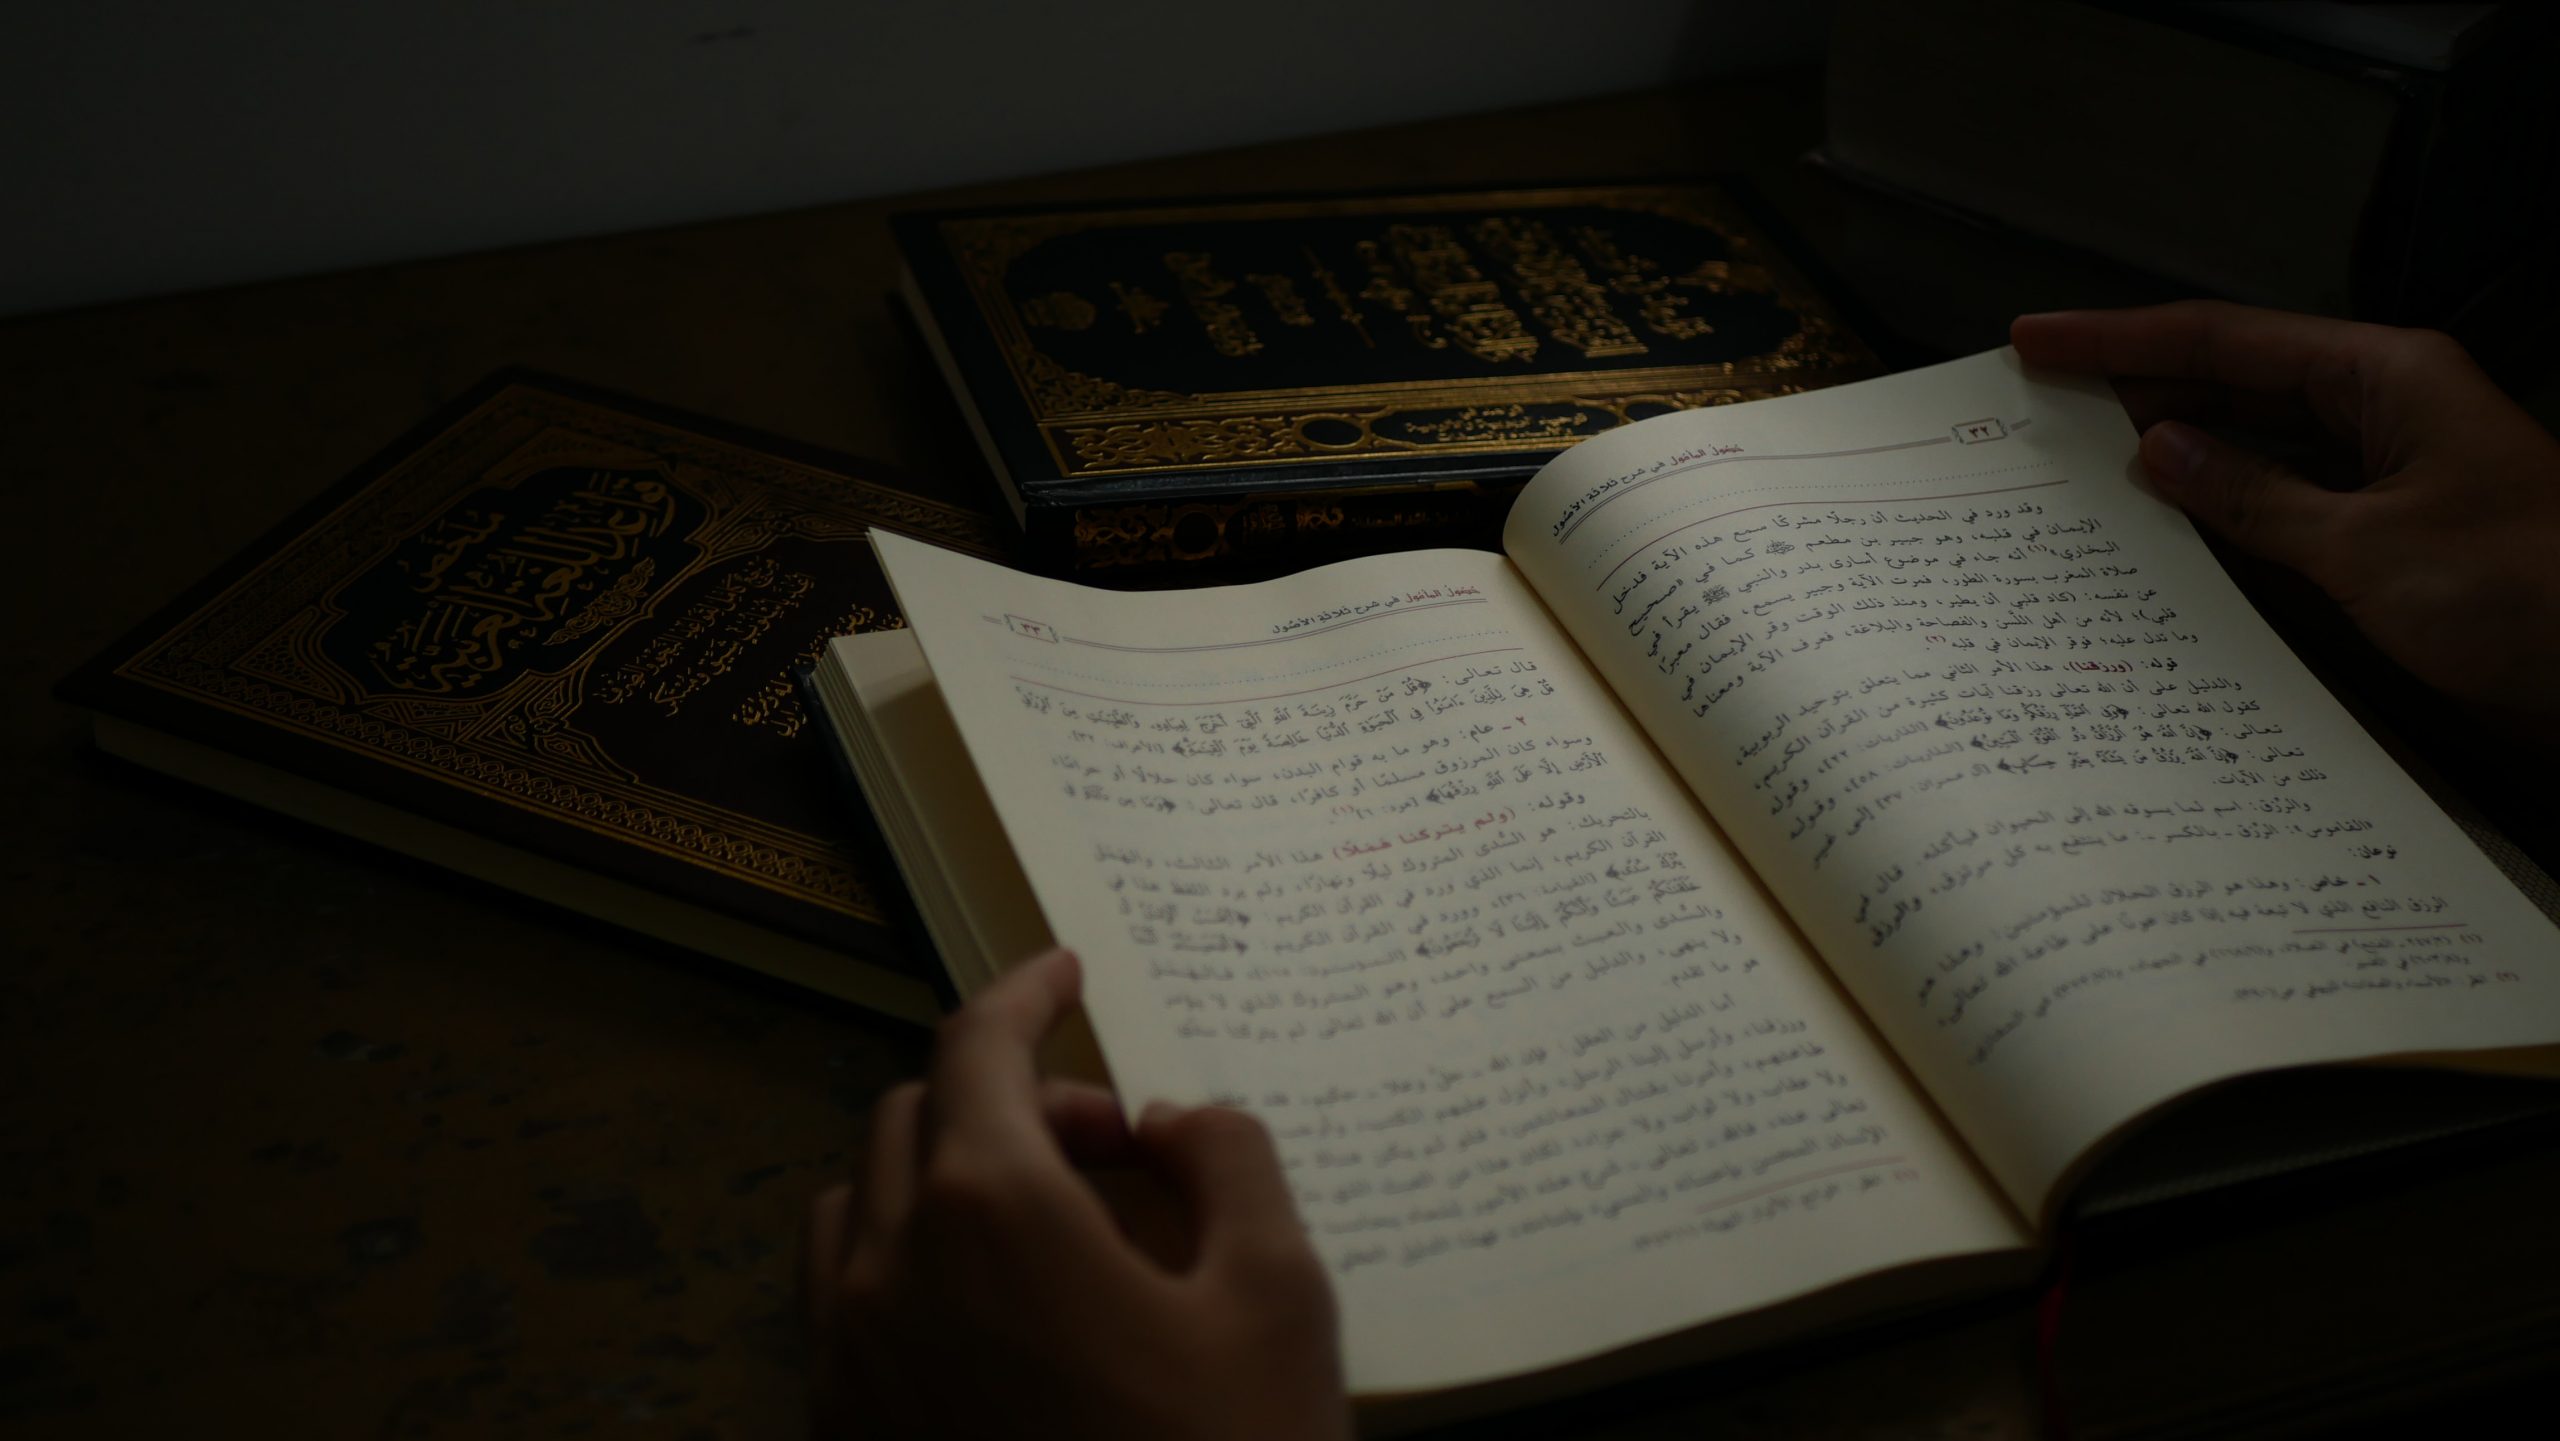 Islamic scholarship